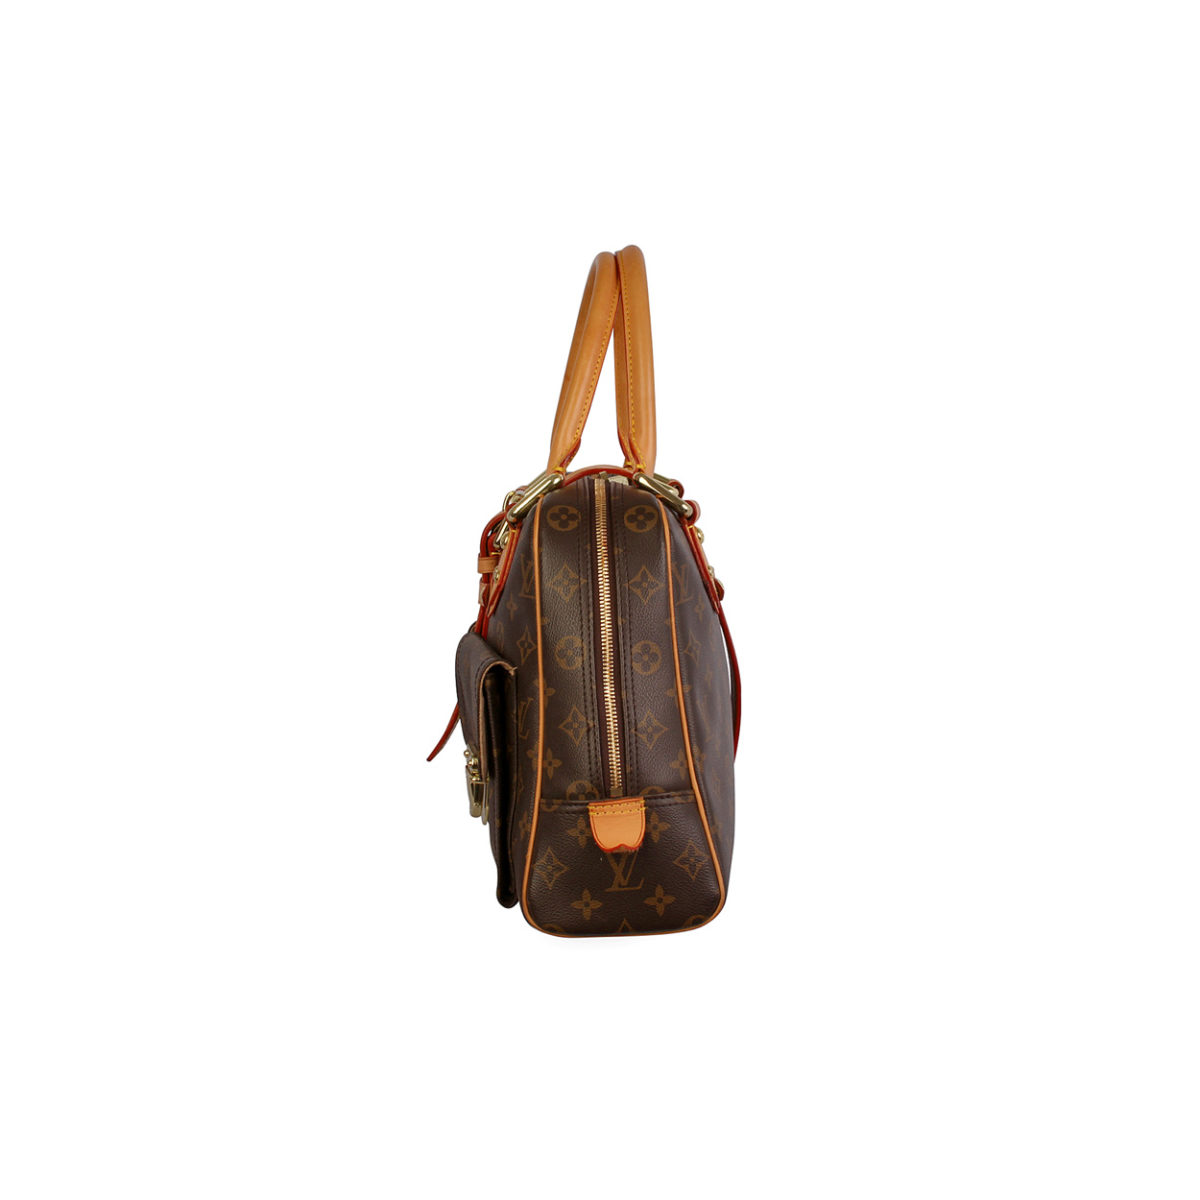 Louis Vuitton, Bags, Authentic Lv Manhattan Gm Handbag